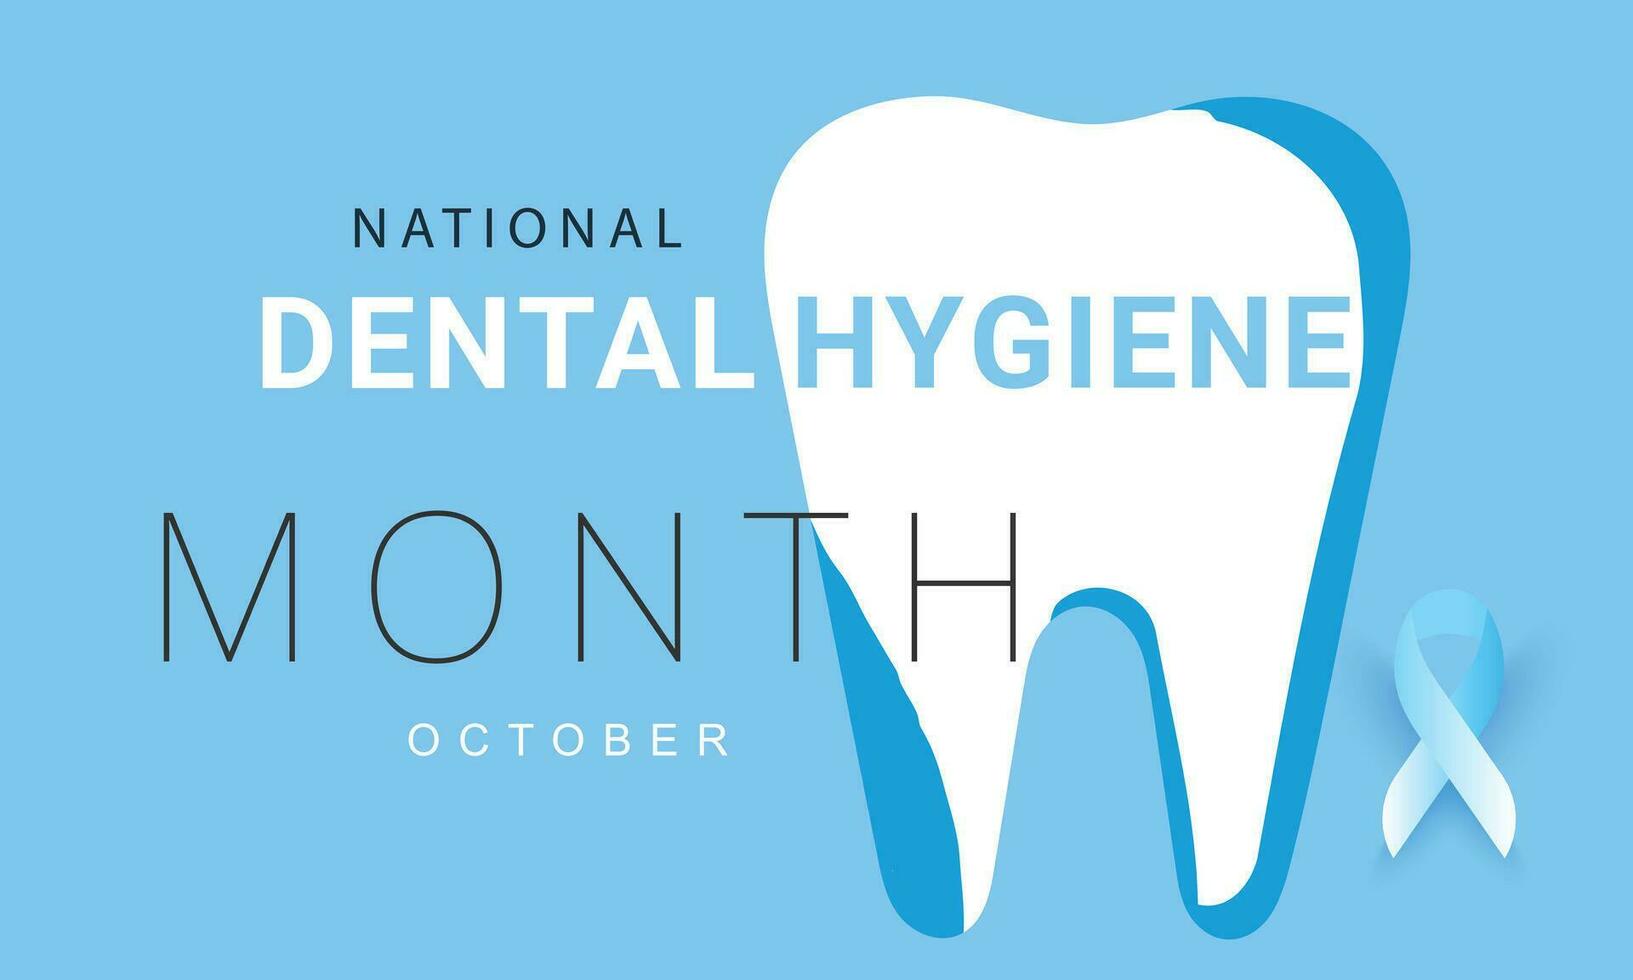 nacional dental higiene mês. fundo, bandeira, cartão, poster, modelo. vetor ilustração.